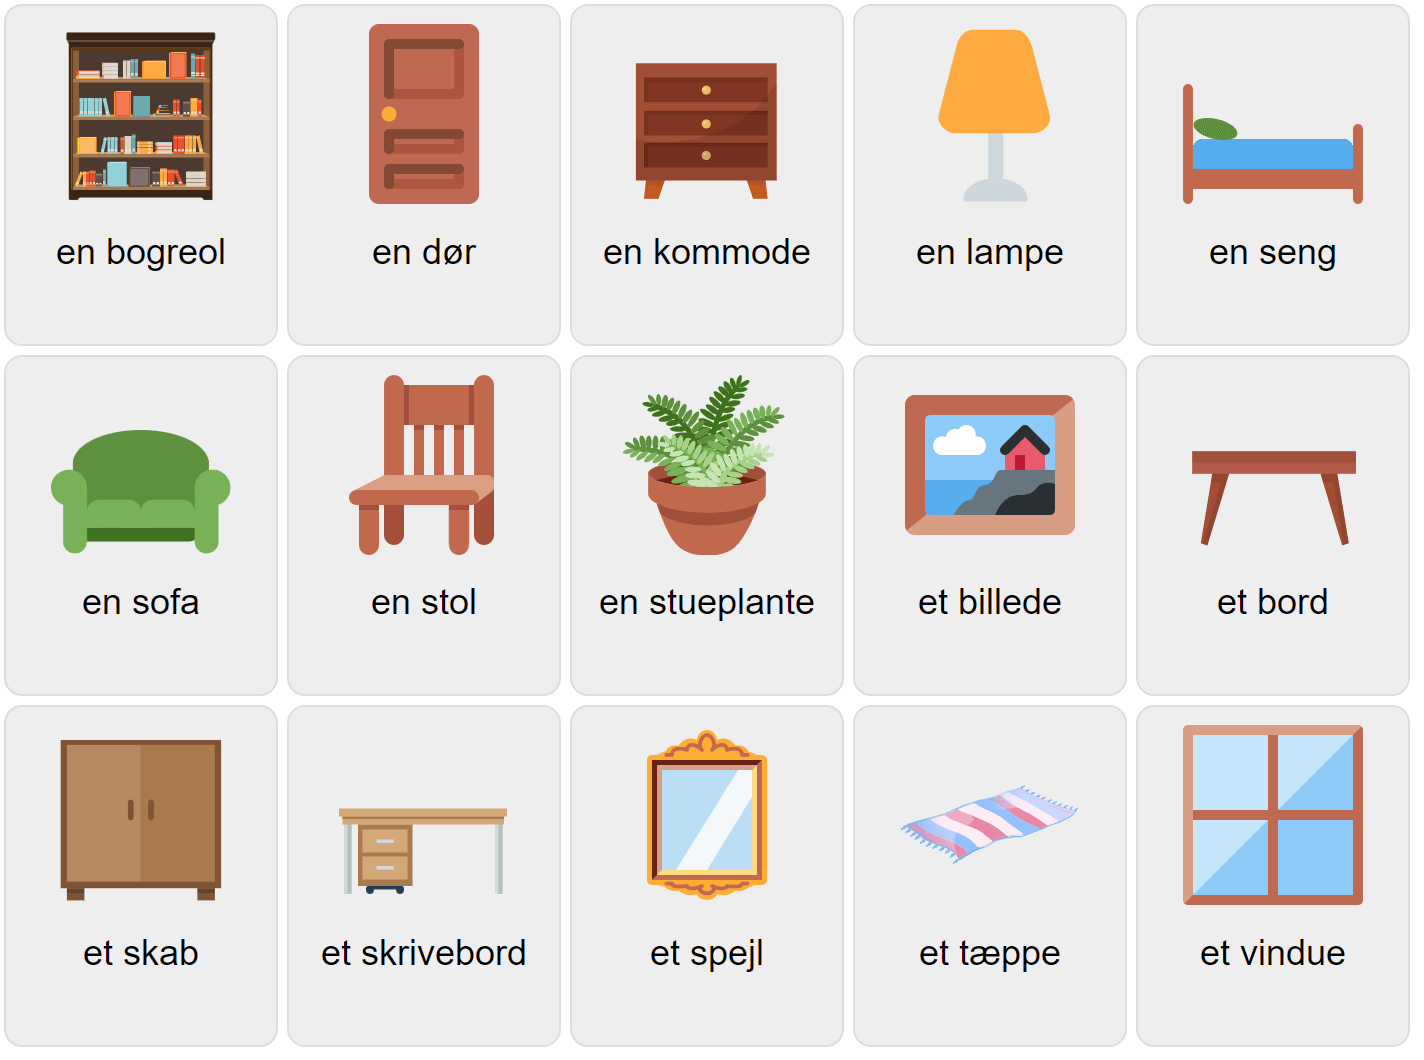 Мебель на датском языке